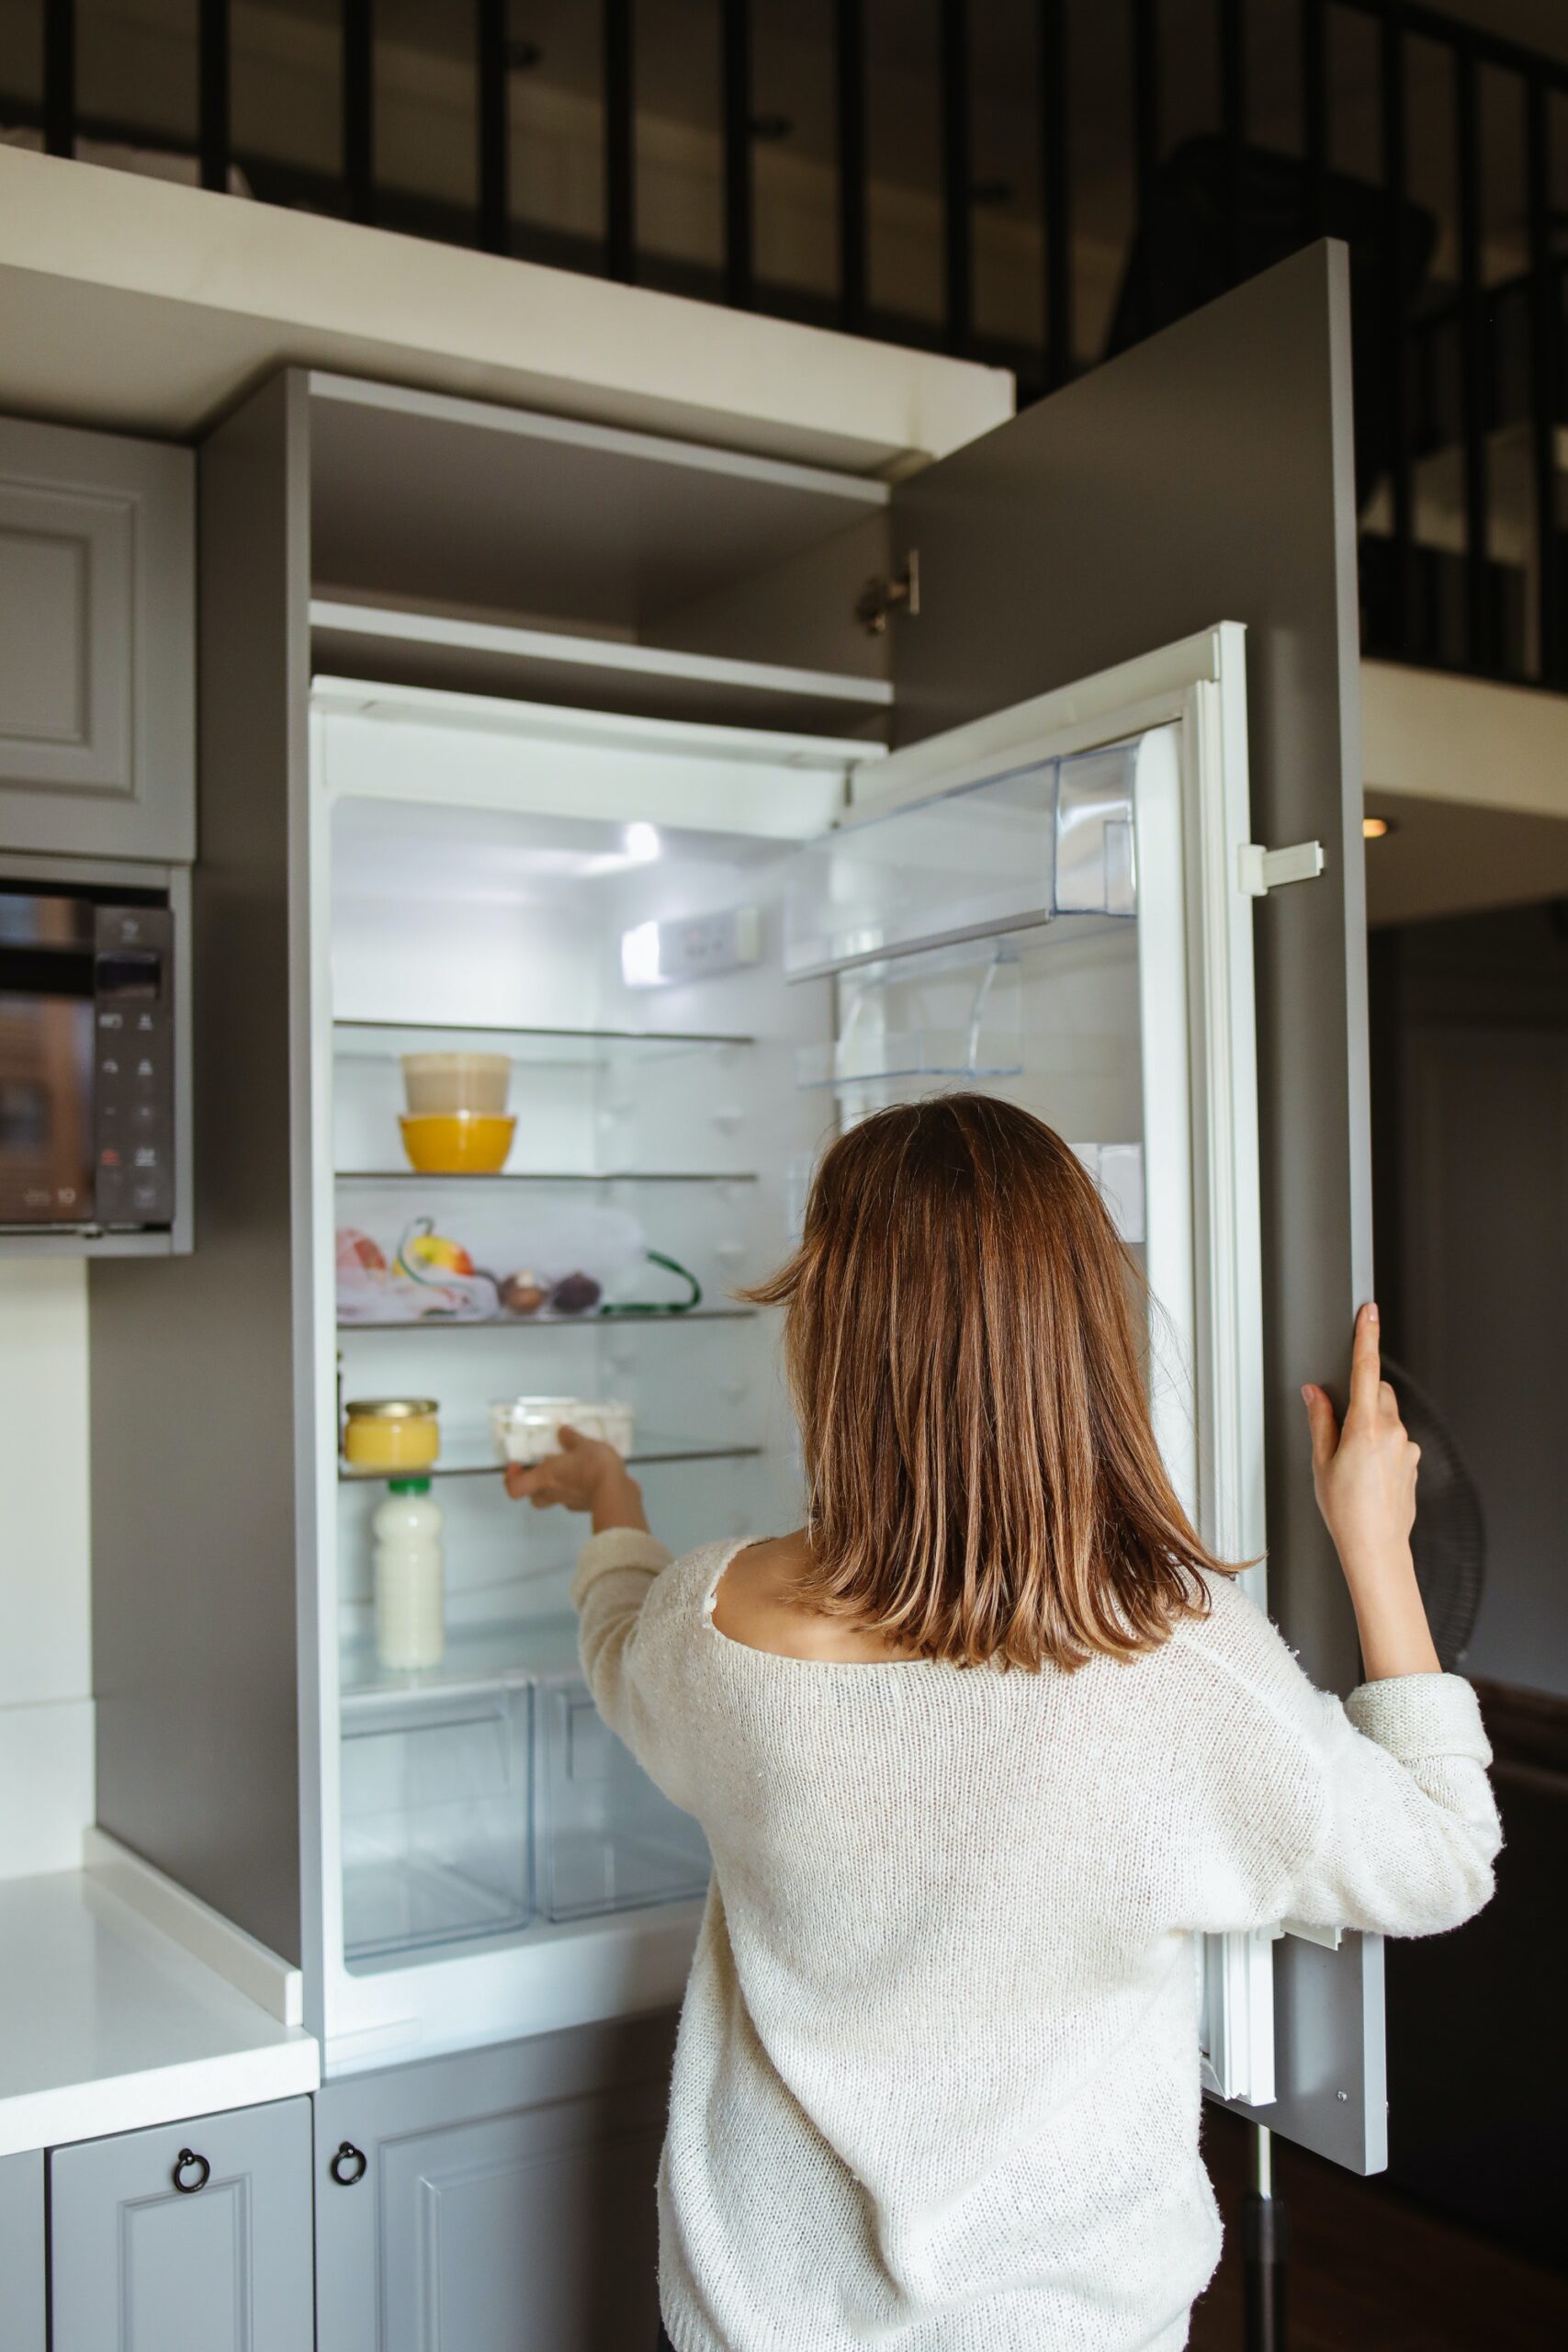 Qué temperatura deben tener el frigorífico y congelador?